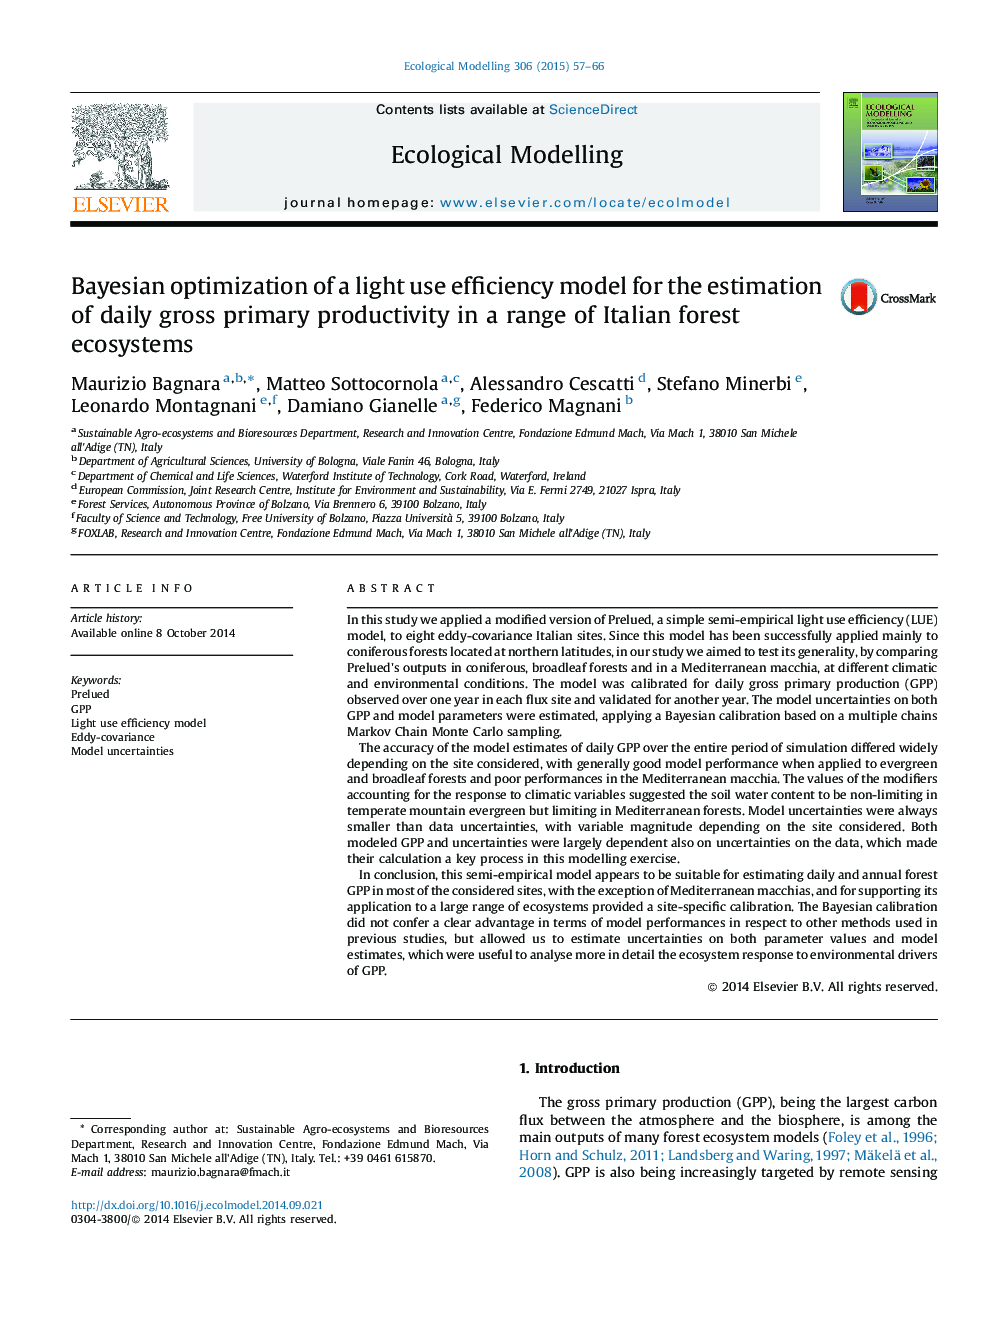 بهینه سازی بیزی برای یک مدل بازده استفاده از نور برای تخمینی بهره وری ناخالص اولیه روزانه در طیف وسیعی از اکوسیستم های جنگل ایتالیایی 